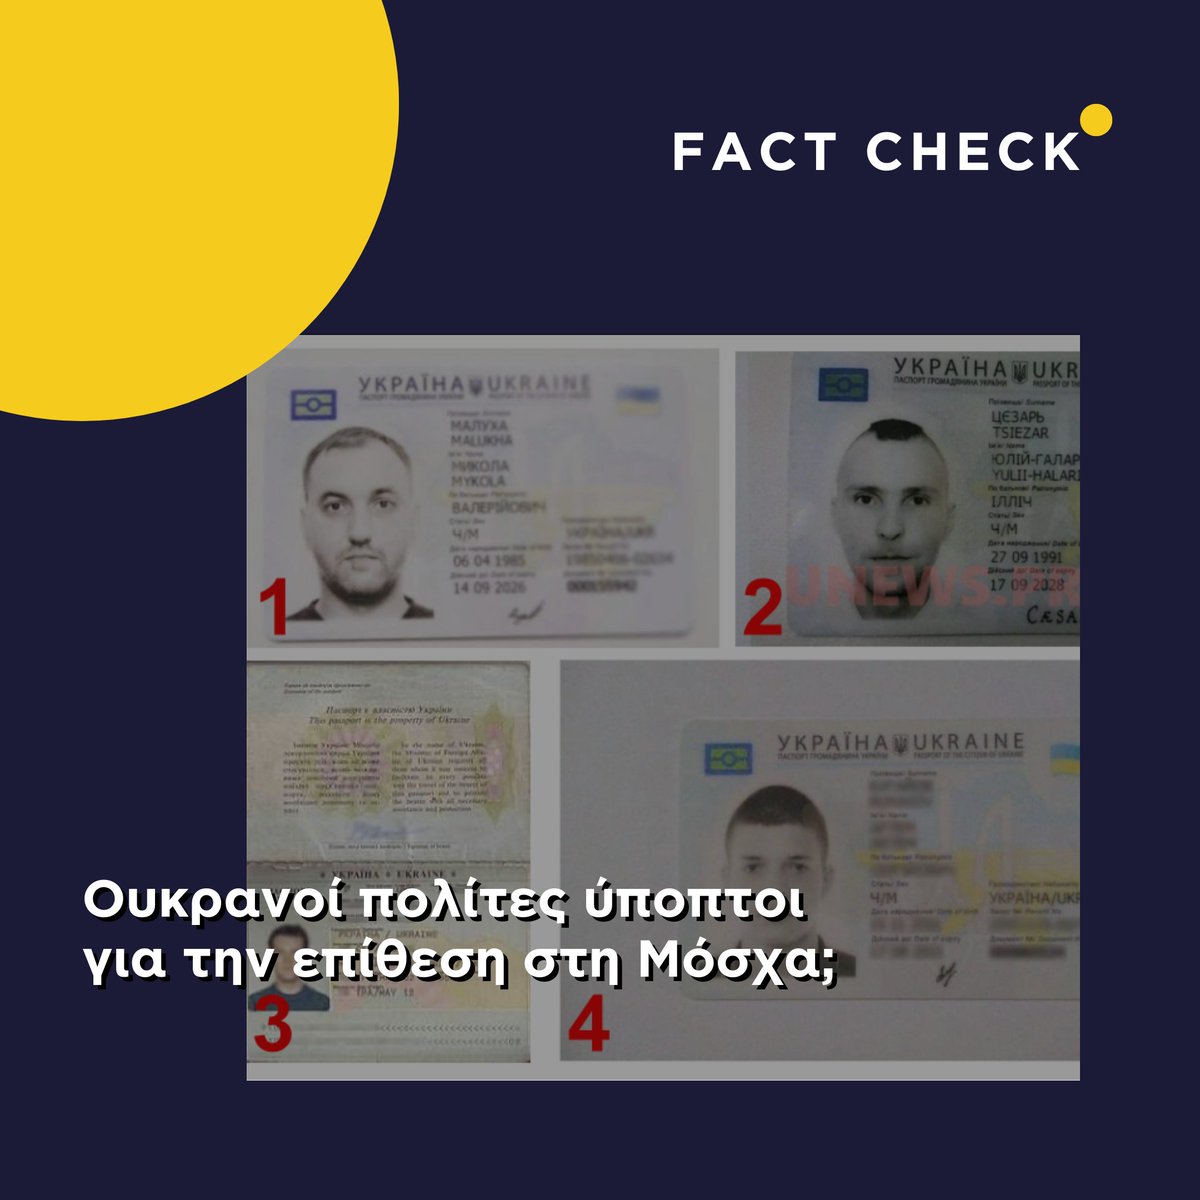 Νέα ύψη παραπληροφόρησης γέννησε η τρομοκρατική επίθεση στη Μόσχα. Αναρτήσεις στο Facebook απεικονίζουν δήθεν ταυτότητες Ουκρανών πολιτών, προβάλλοντας τον ισχυρισμό ότι τα συγκεκριμένα άτομα ενεπλάκησαν στο περιστατικό. Διαβάστε τι ισχύει εδώ: bit.ly/49lm3bi
#MedDMO